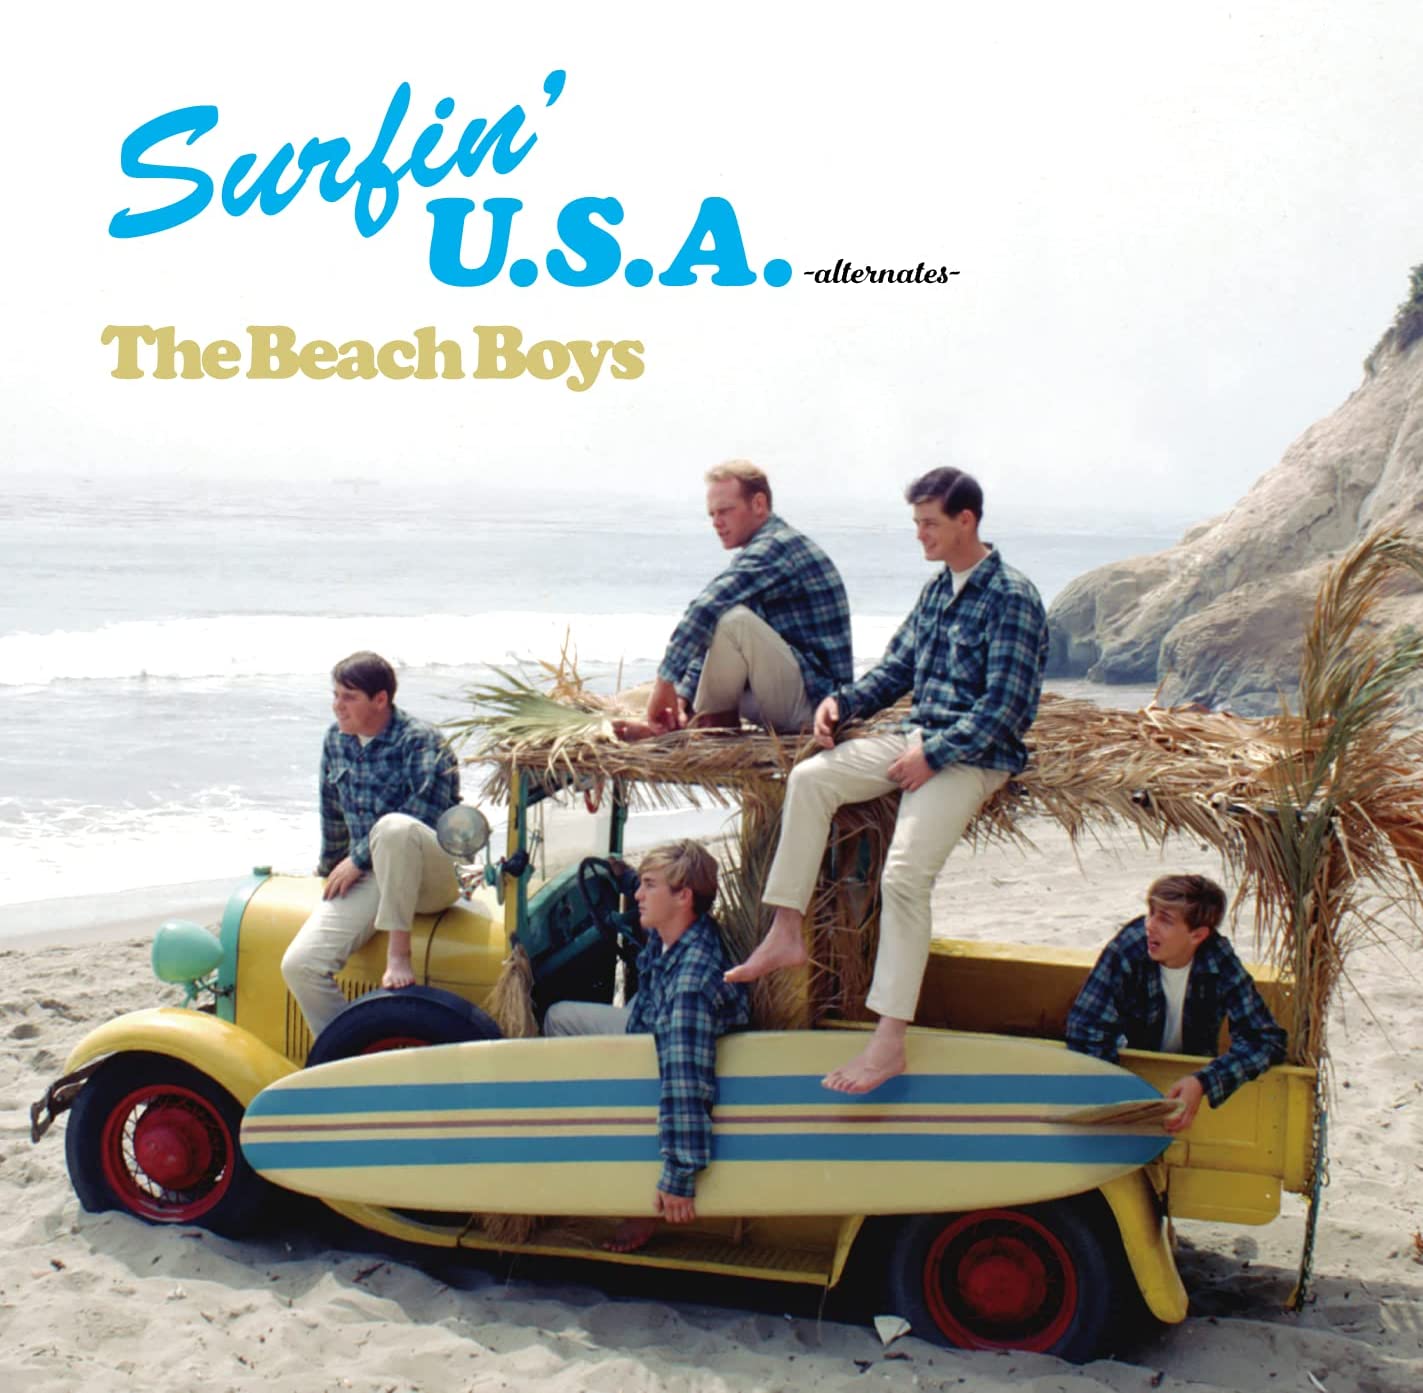 Pochette du disque Surfin' U.S.A. Alternates